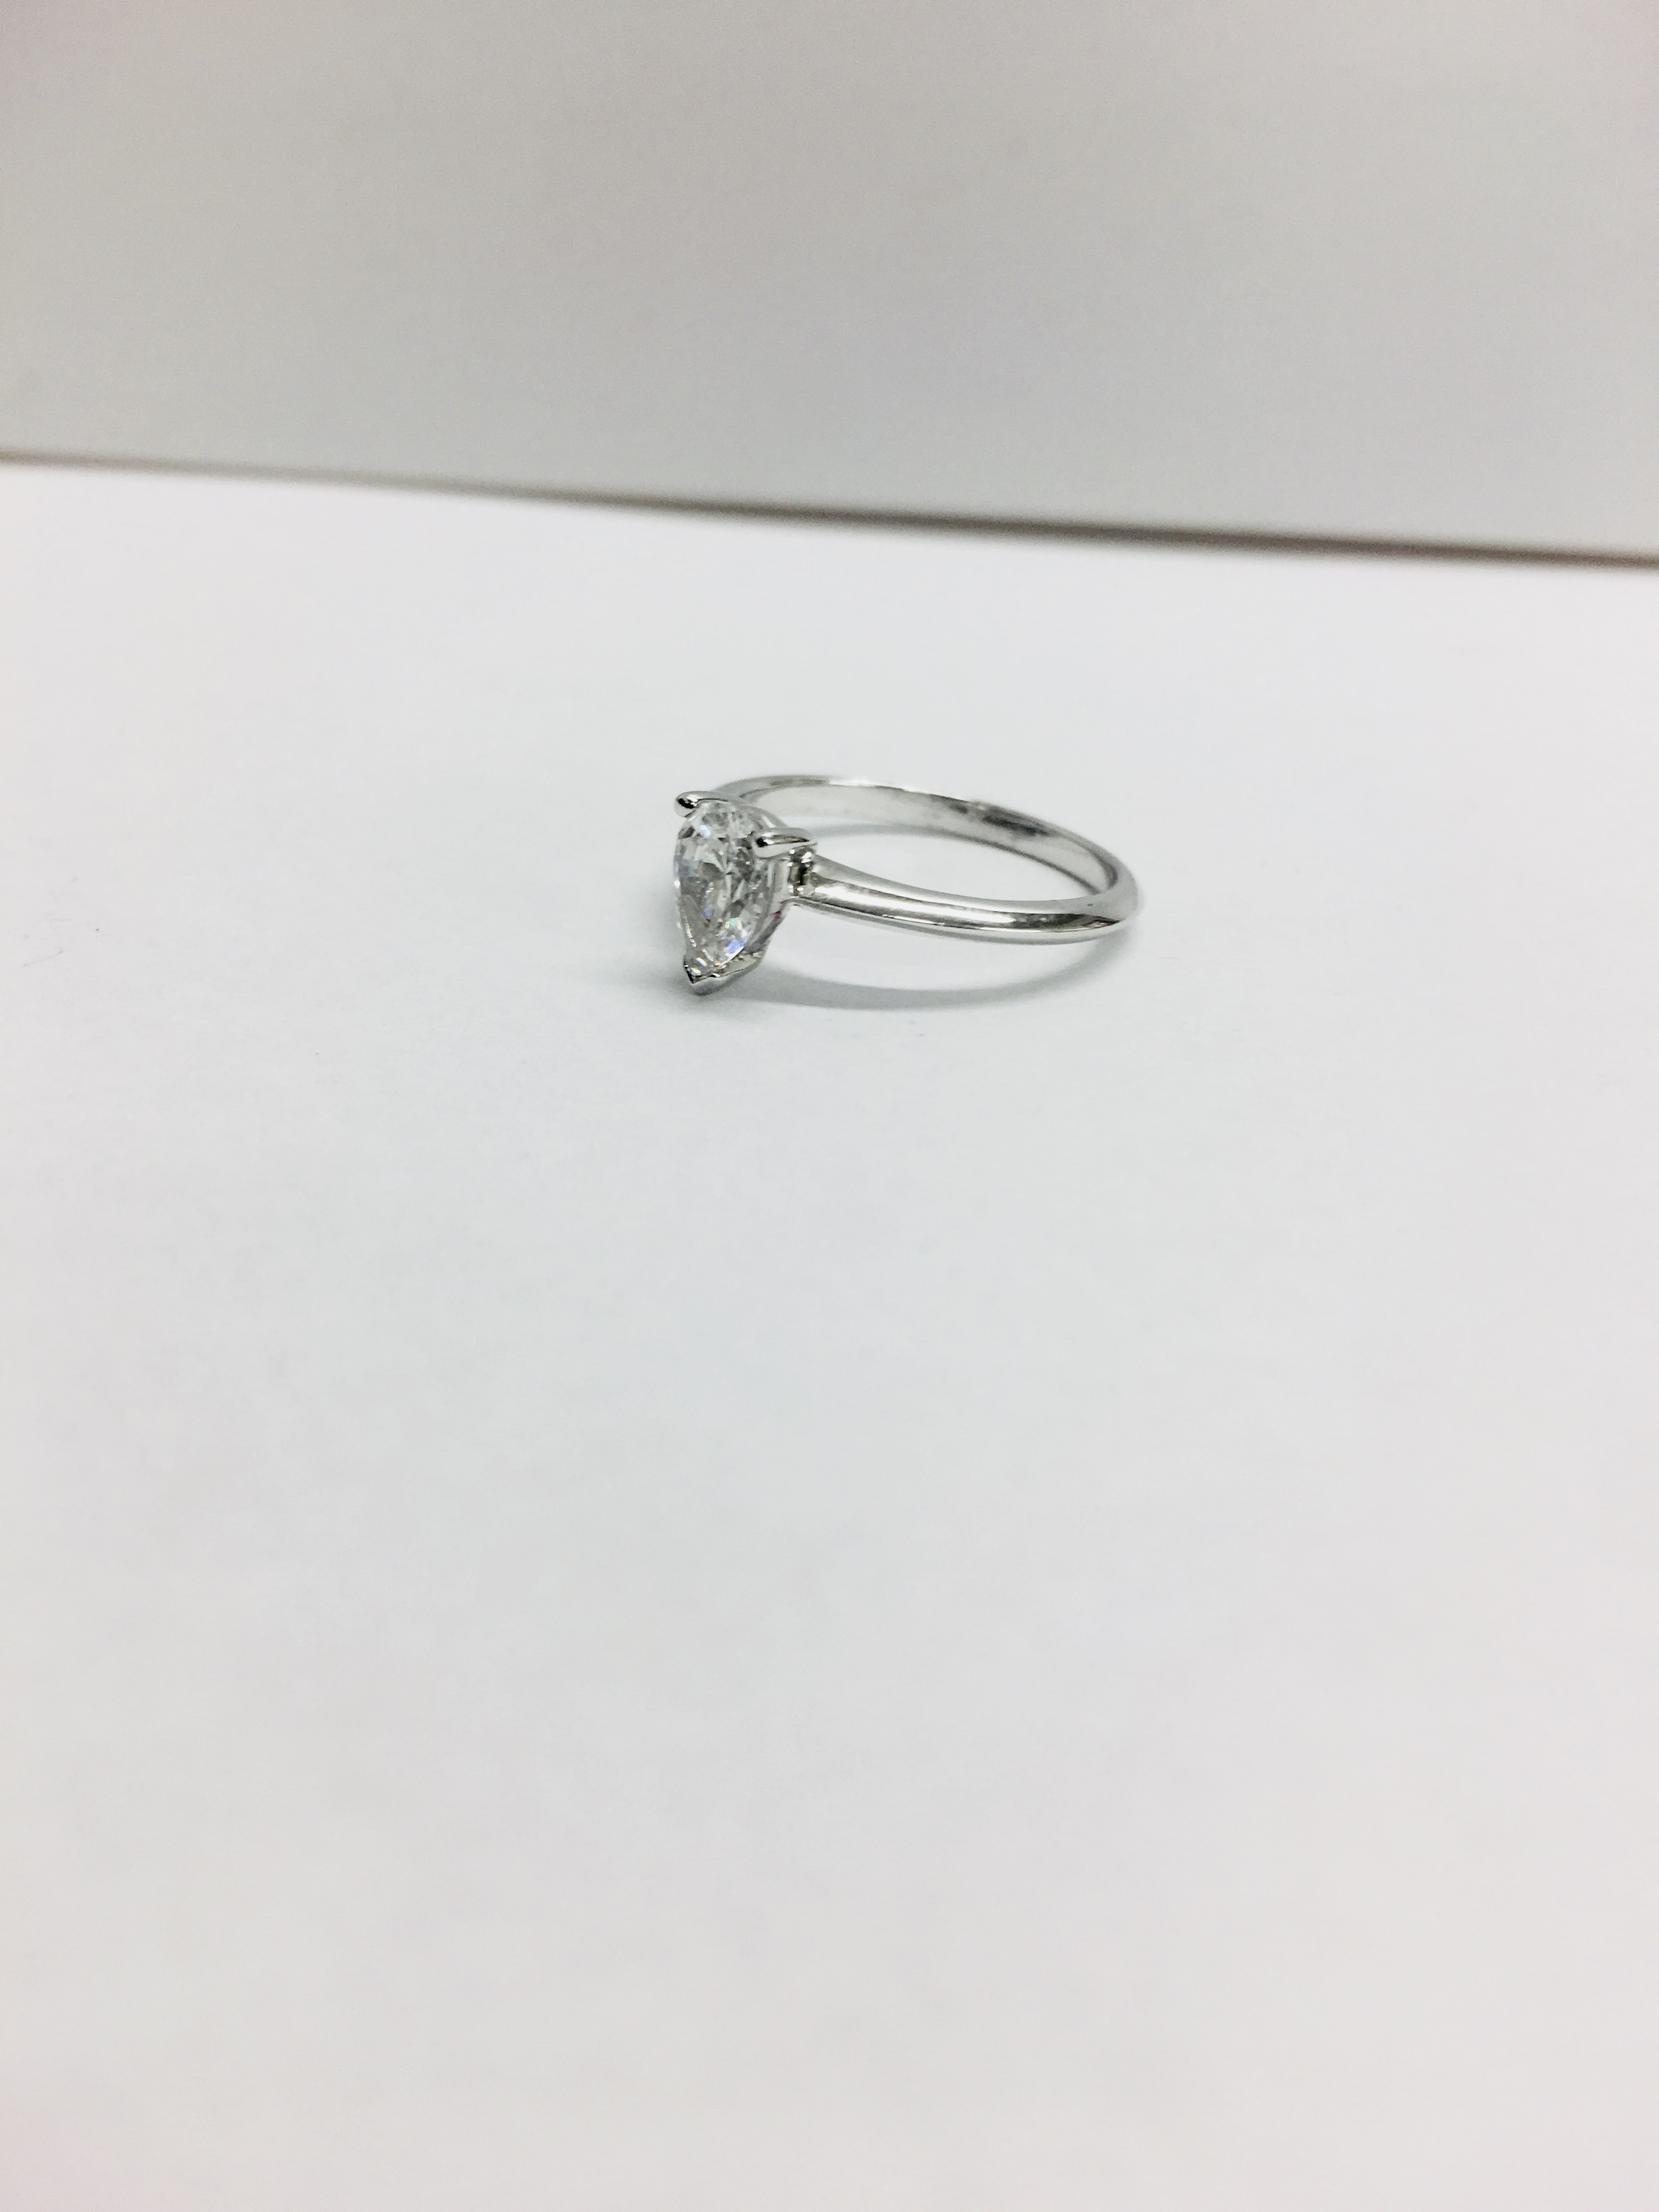 0.45Ct Diamond Solitaire Ring Set In Platinum 950. - Image 3 of 5